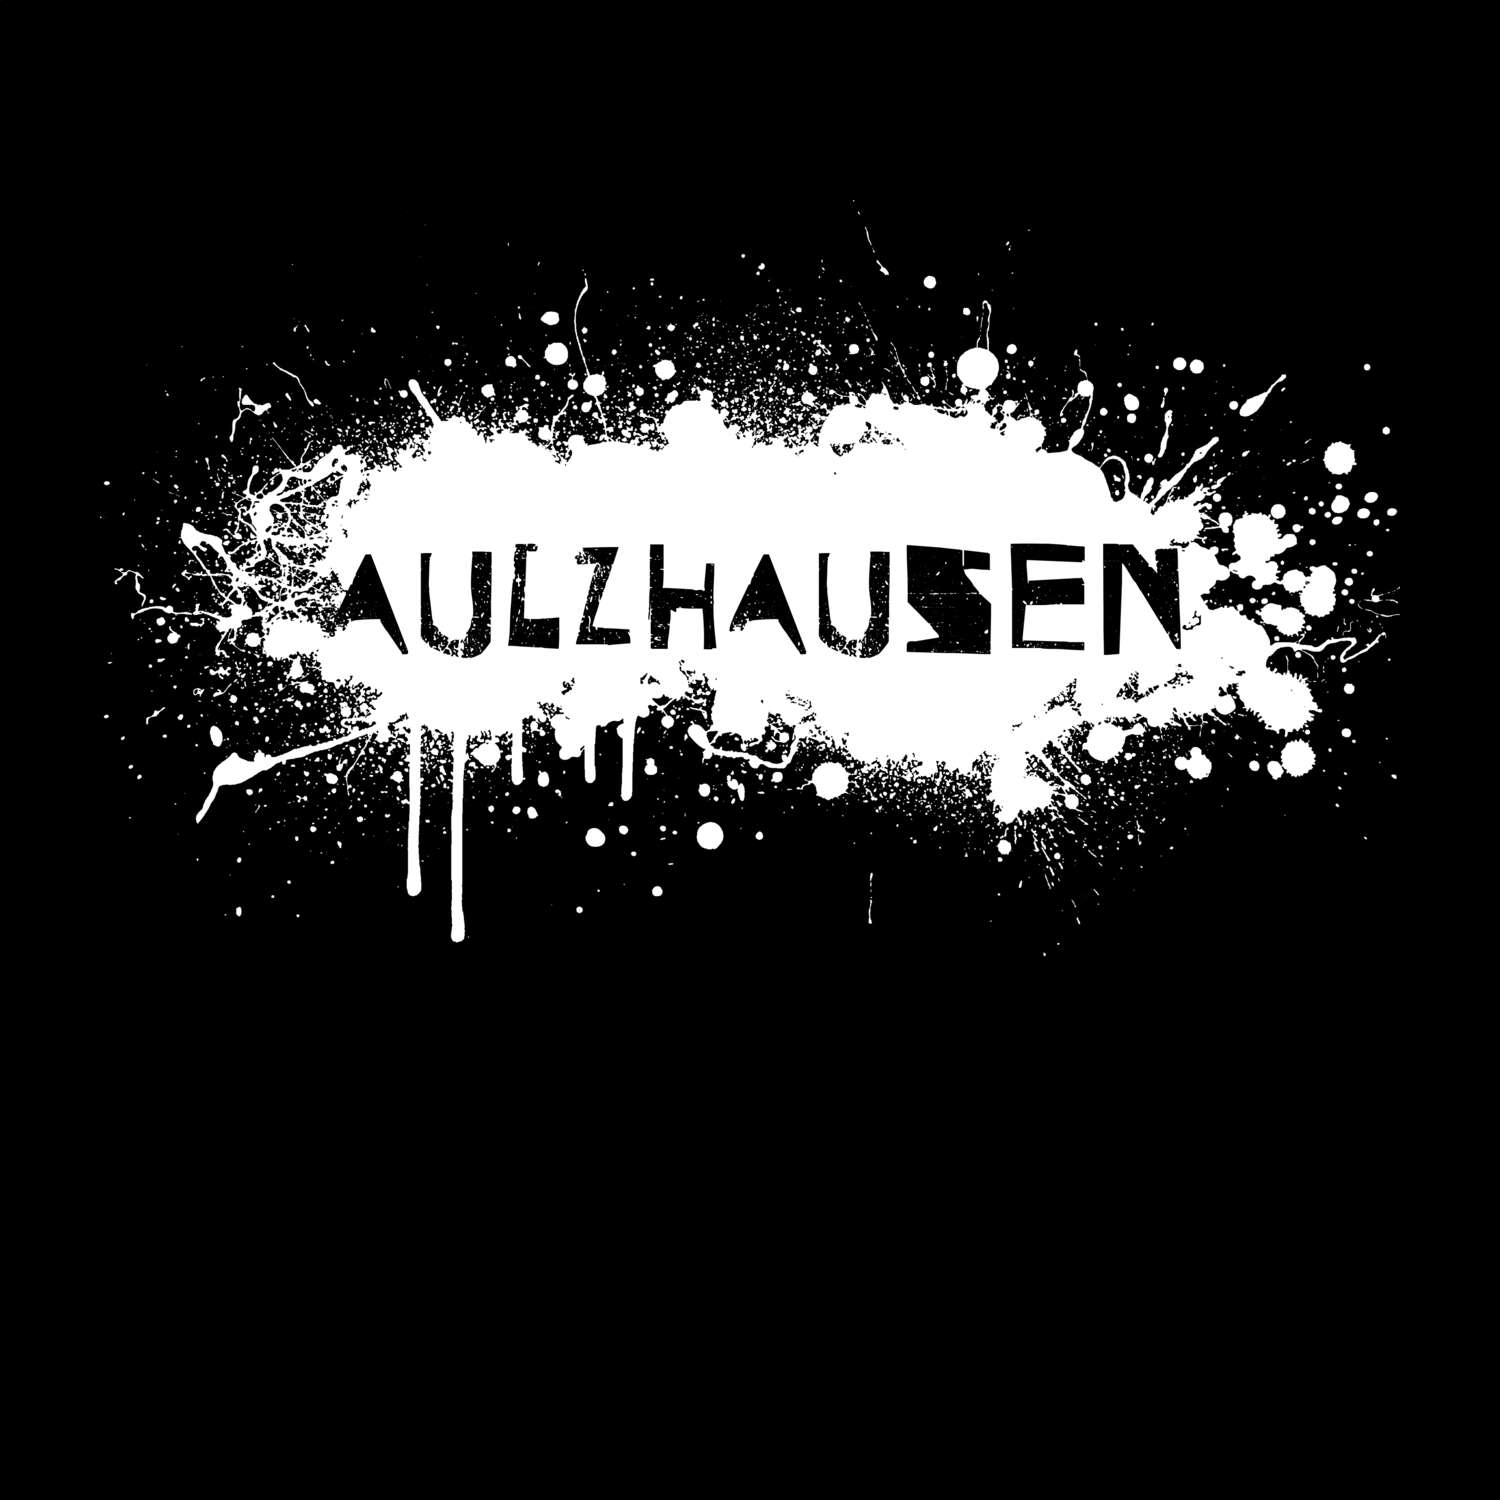 Aulzhausen T-Shirt »Paint Splash Punk«